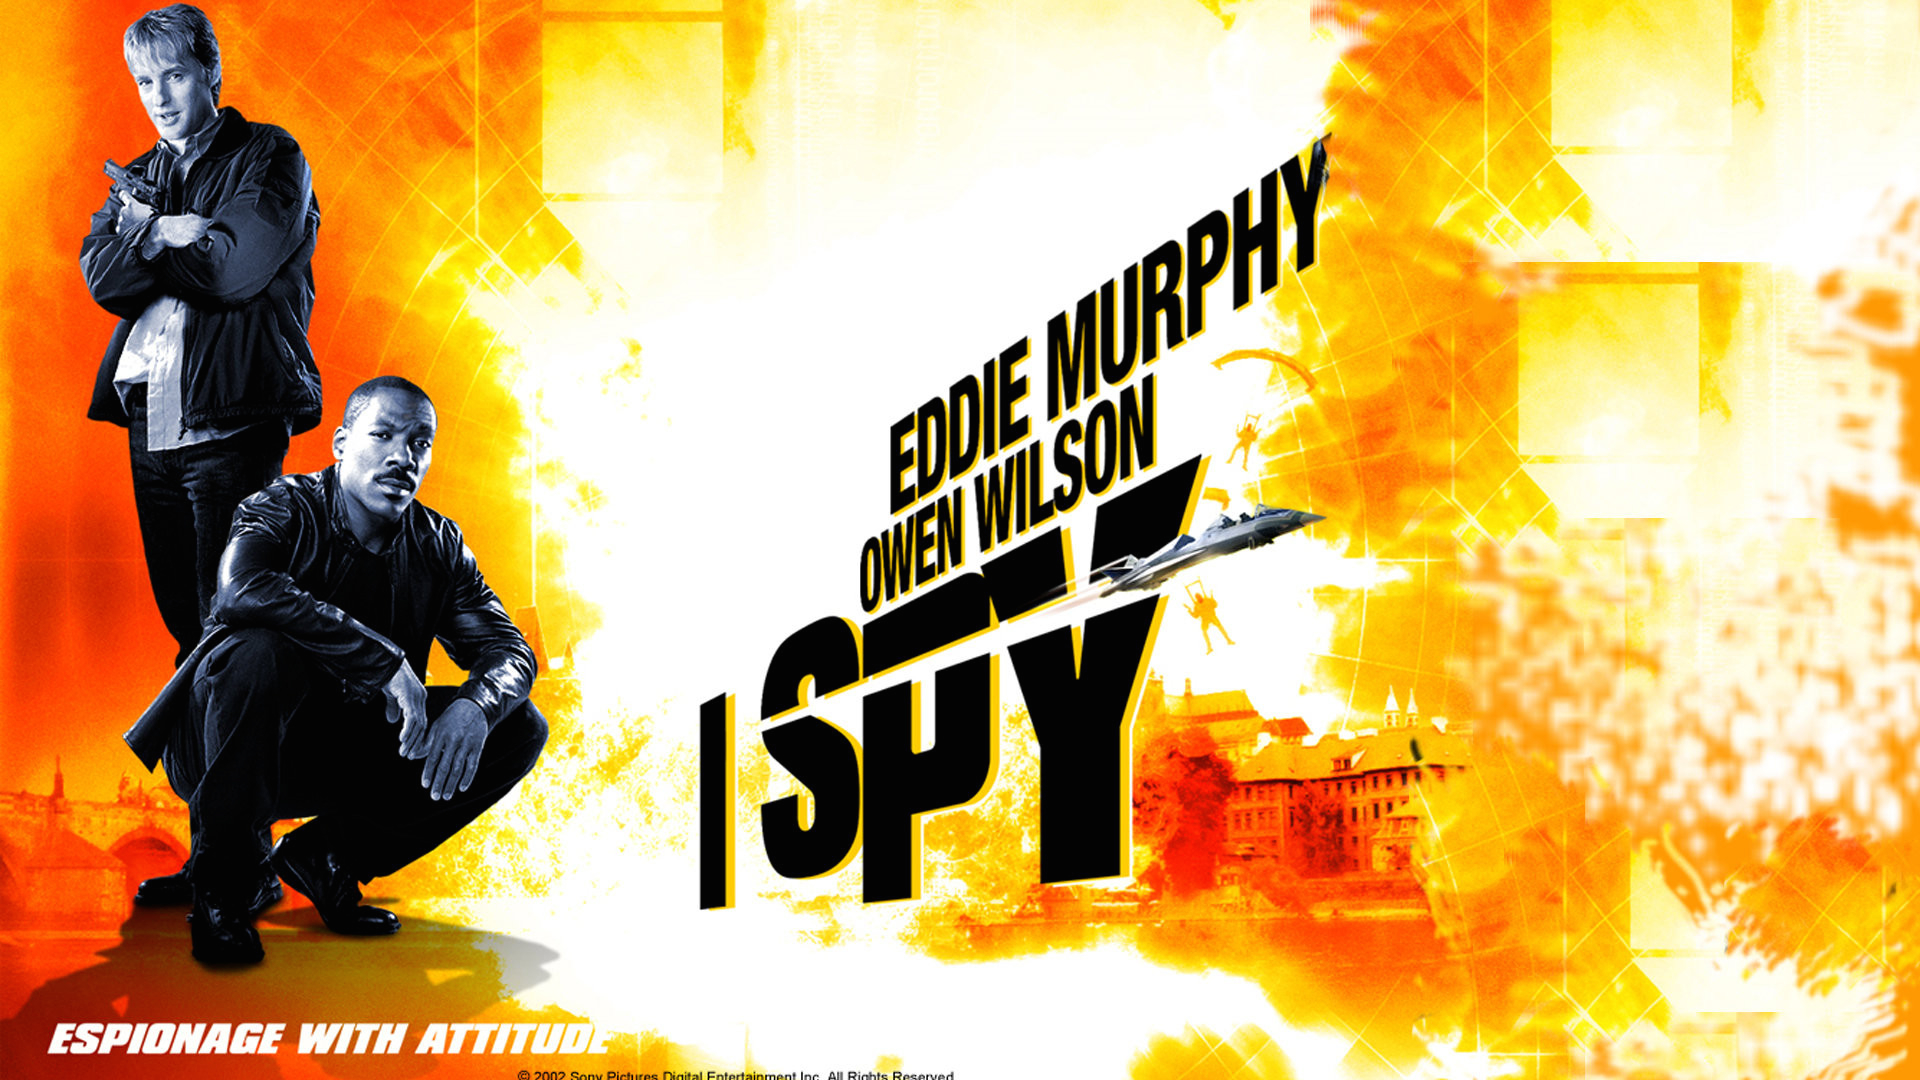 2002-I-Spy-01.jpg